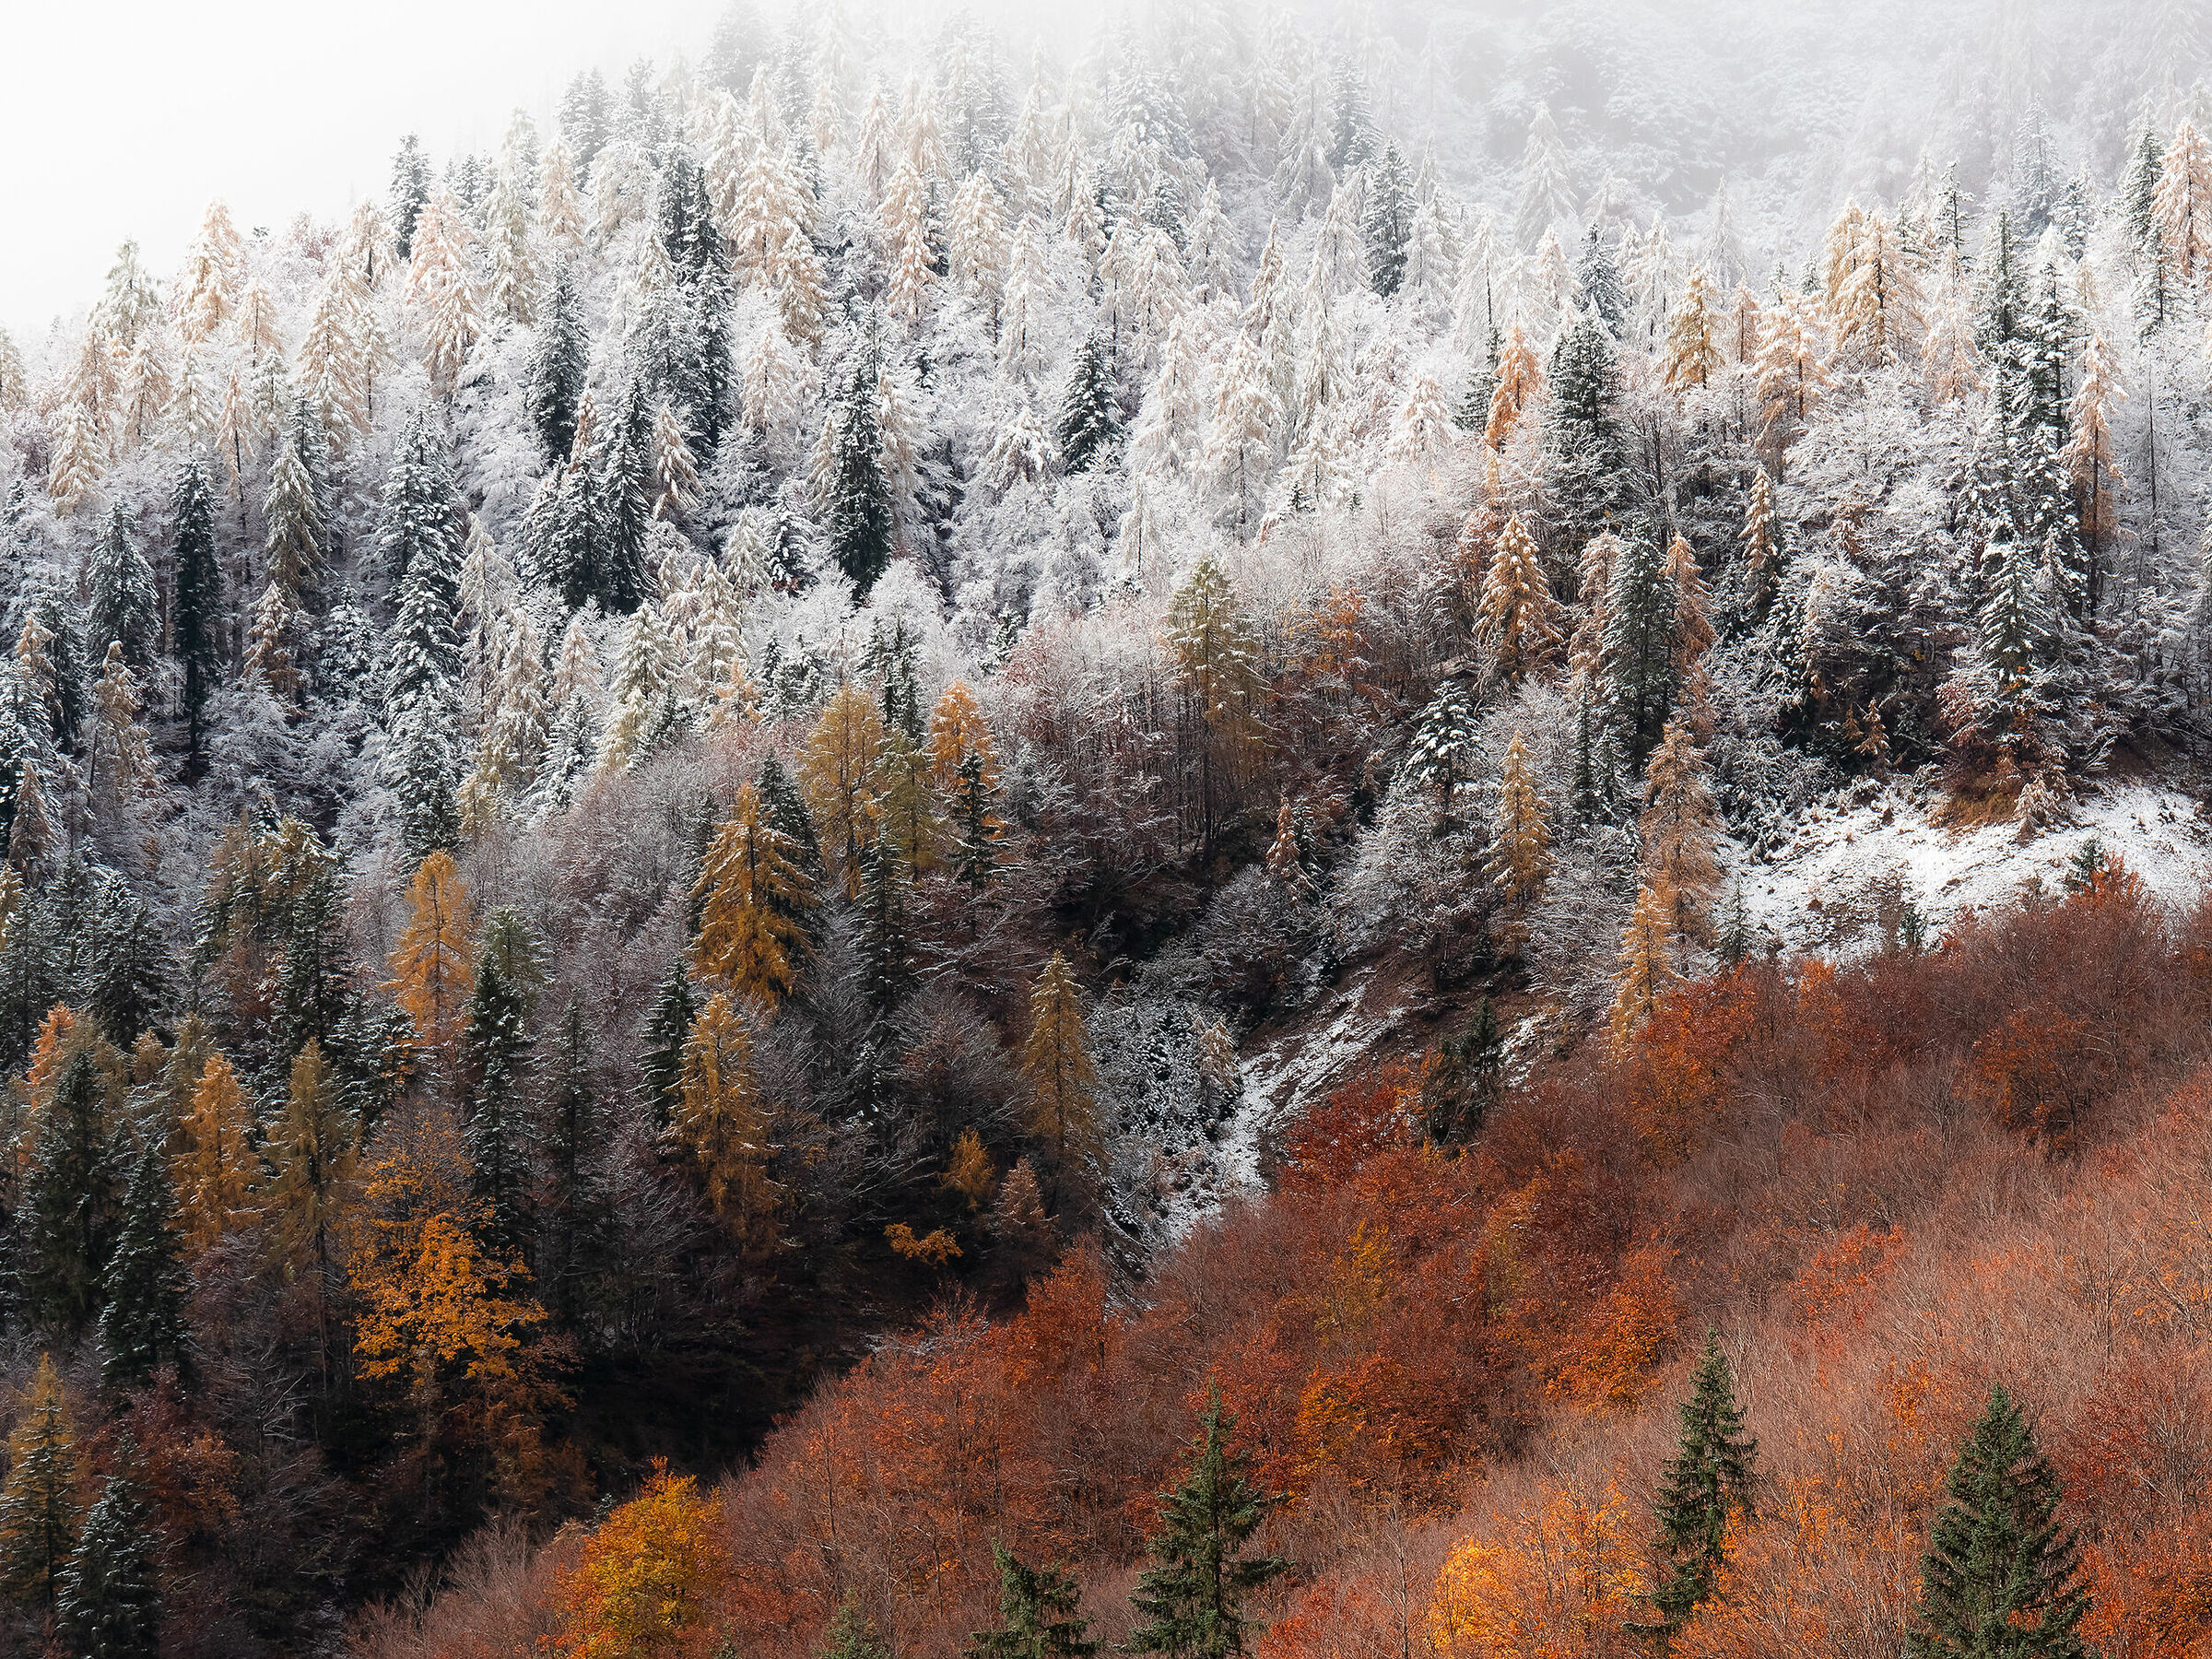 Sfumando verso l'inverno - Alpi Giulie...